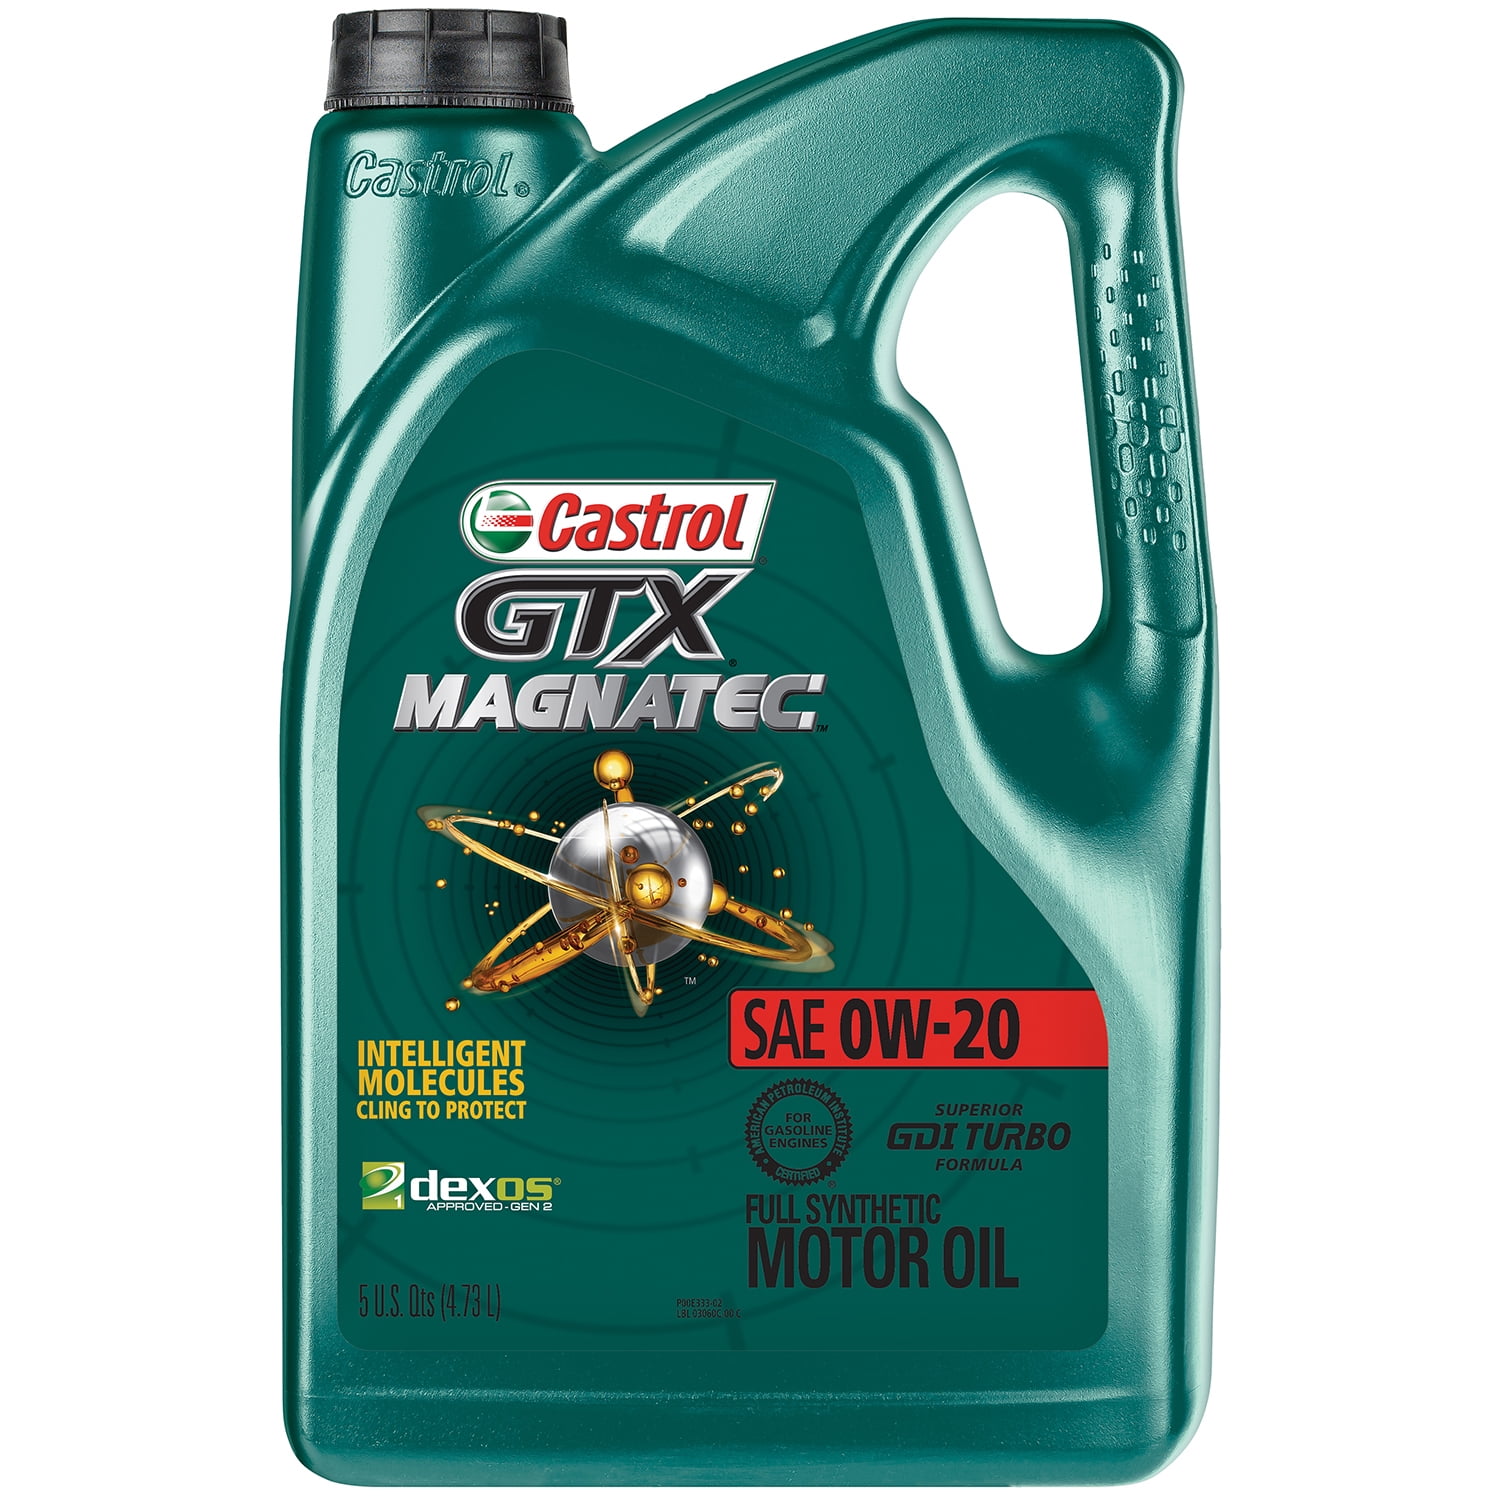 Castrol GTX MAGNATEC 0W20 Full Synthetic Motor Oil, 5 Quarts  Walmart